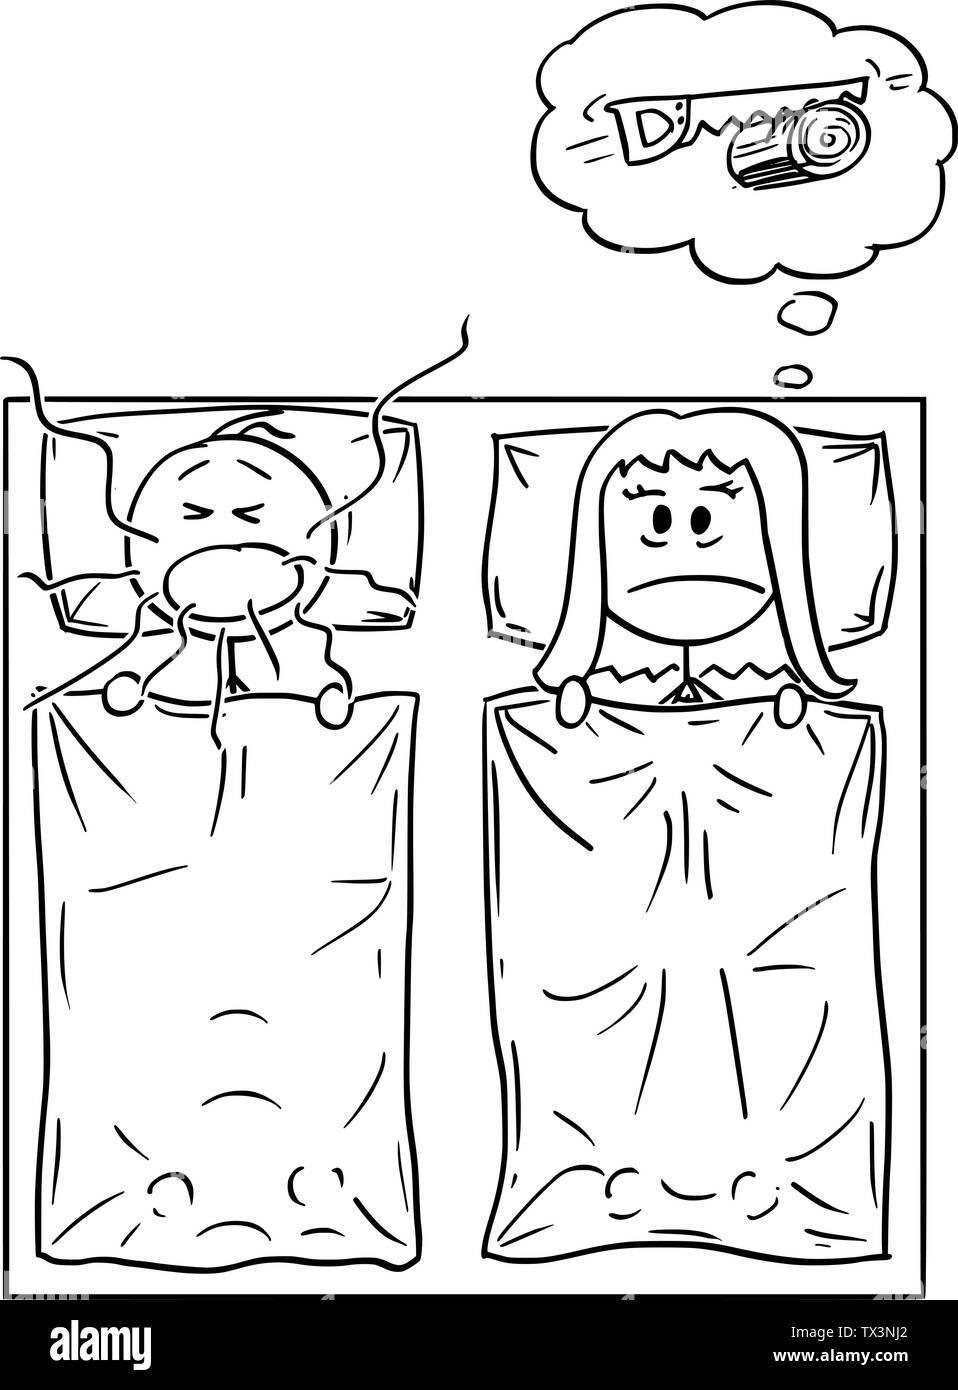 Vector cartoon stick figure dessin illustration conceptuelle du couple au lit dans la chambre. L'homme est le ronflement bruyant et la femme ne peut pas dormir. Illustration de Vecteur